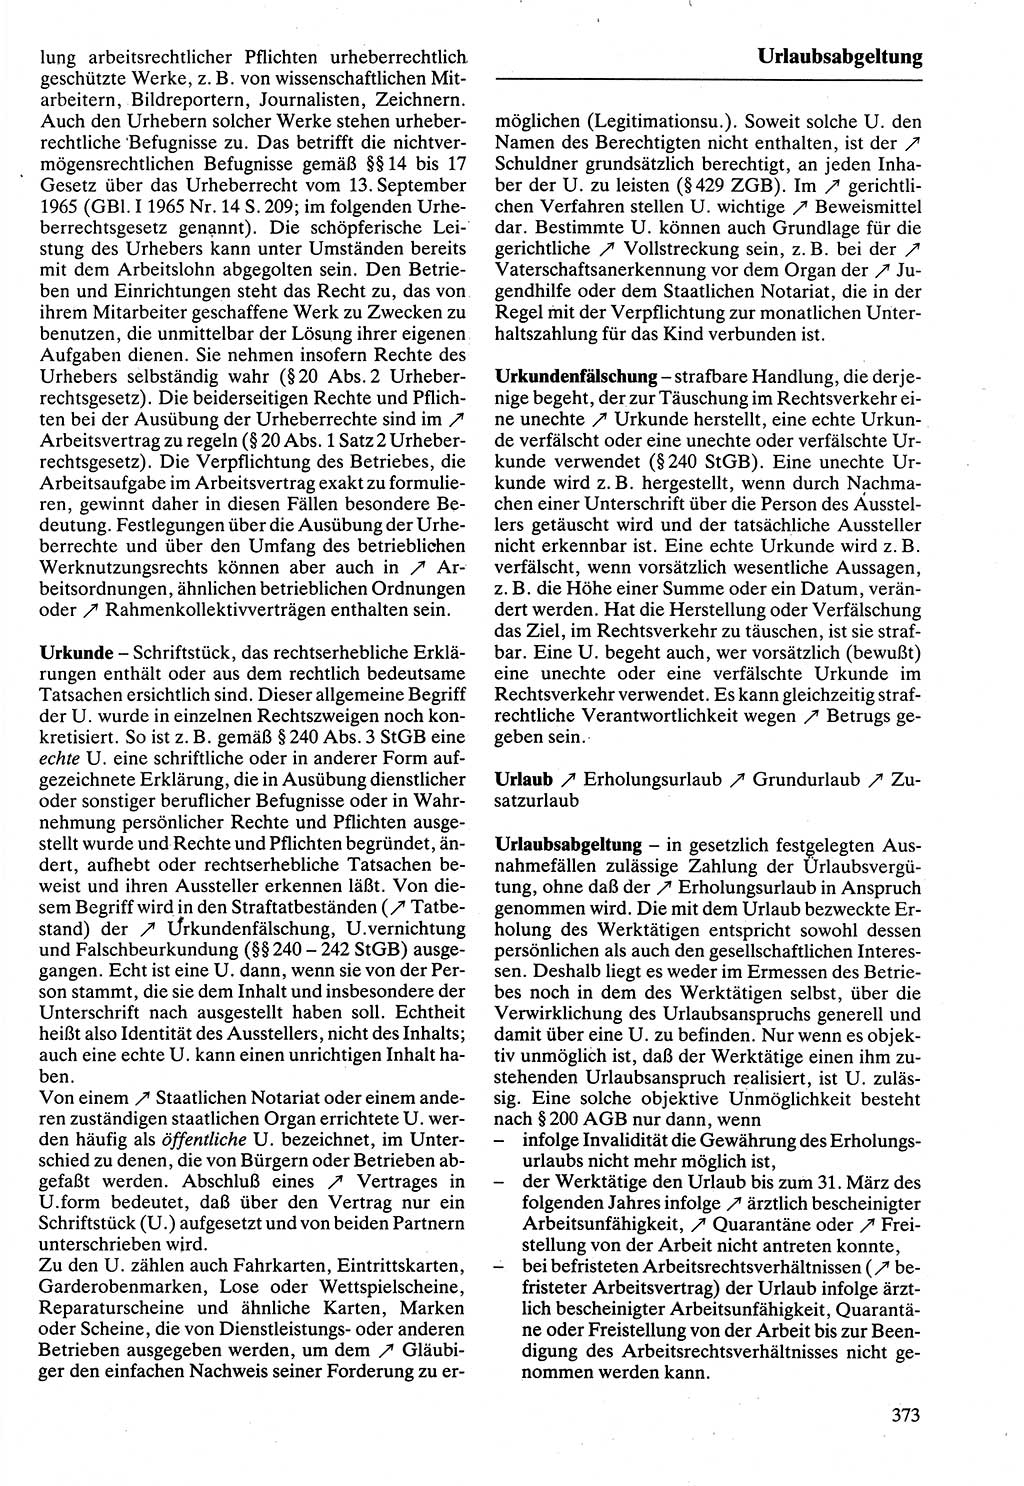 Rechtslexikon [Deutsche Demokratische Republik (DDR)] 1988, Seite 373 (Rechtslex. DDR 1988, S. 373)